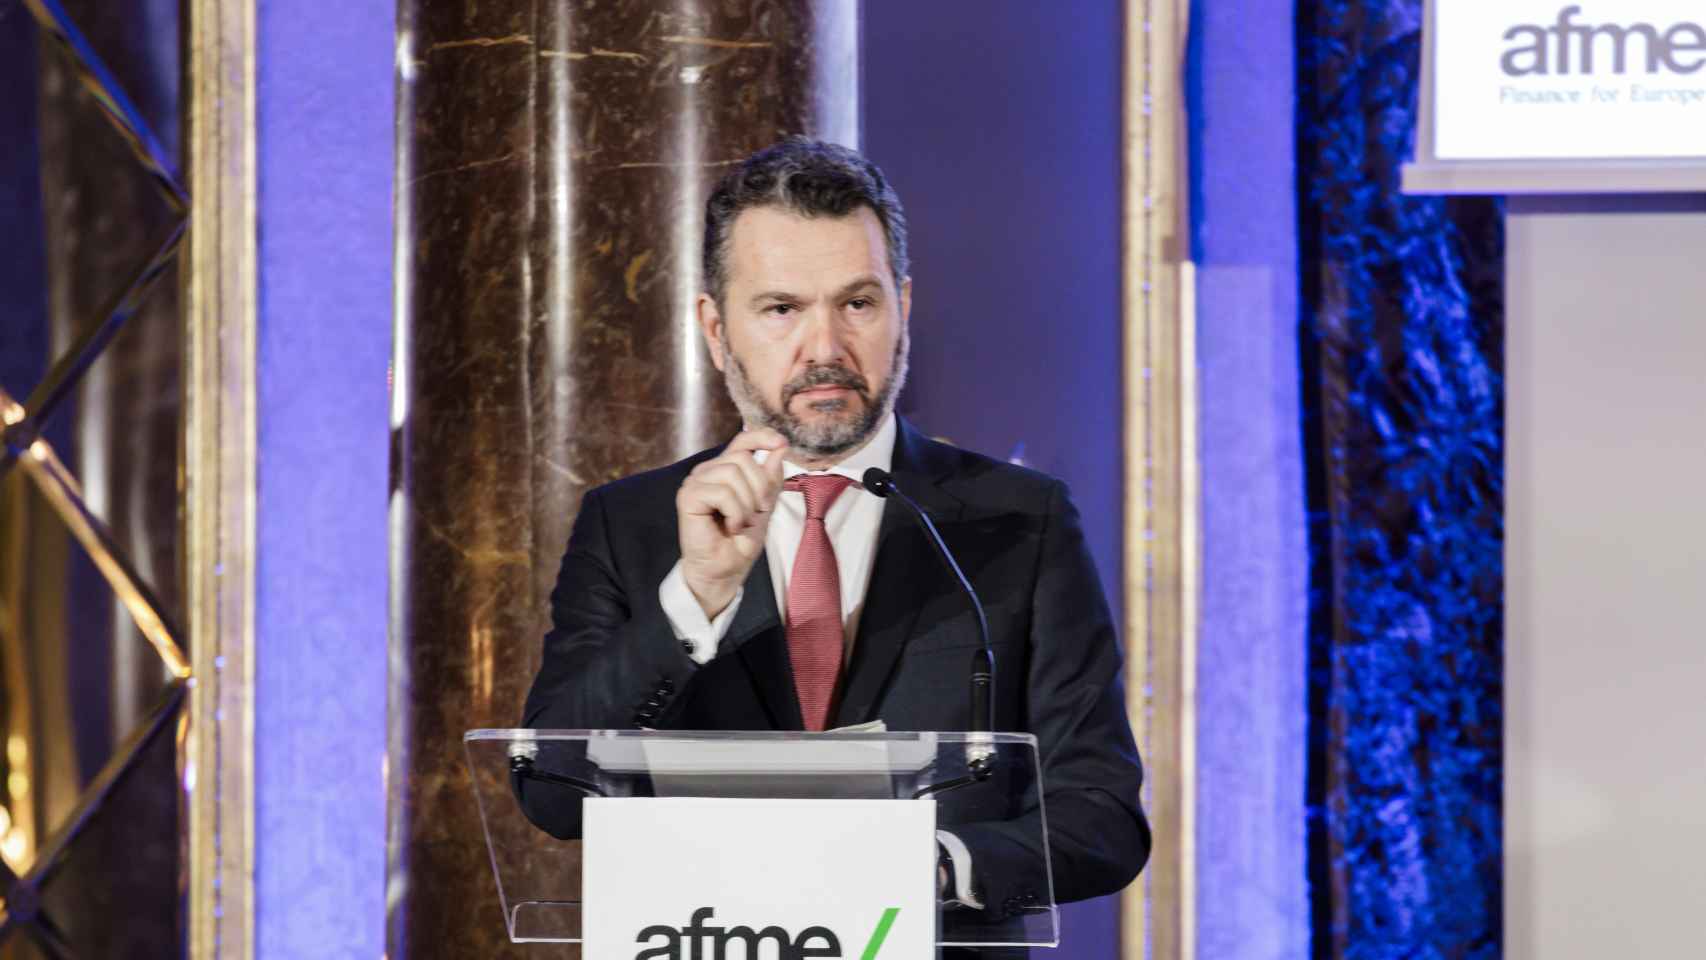 El presidente de la CNMV, Rodrigo Buenaventura, interviene durante una conferencia anual de mercados financieros españoles organizada por AFME.